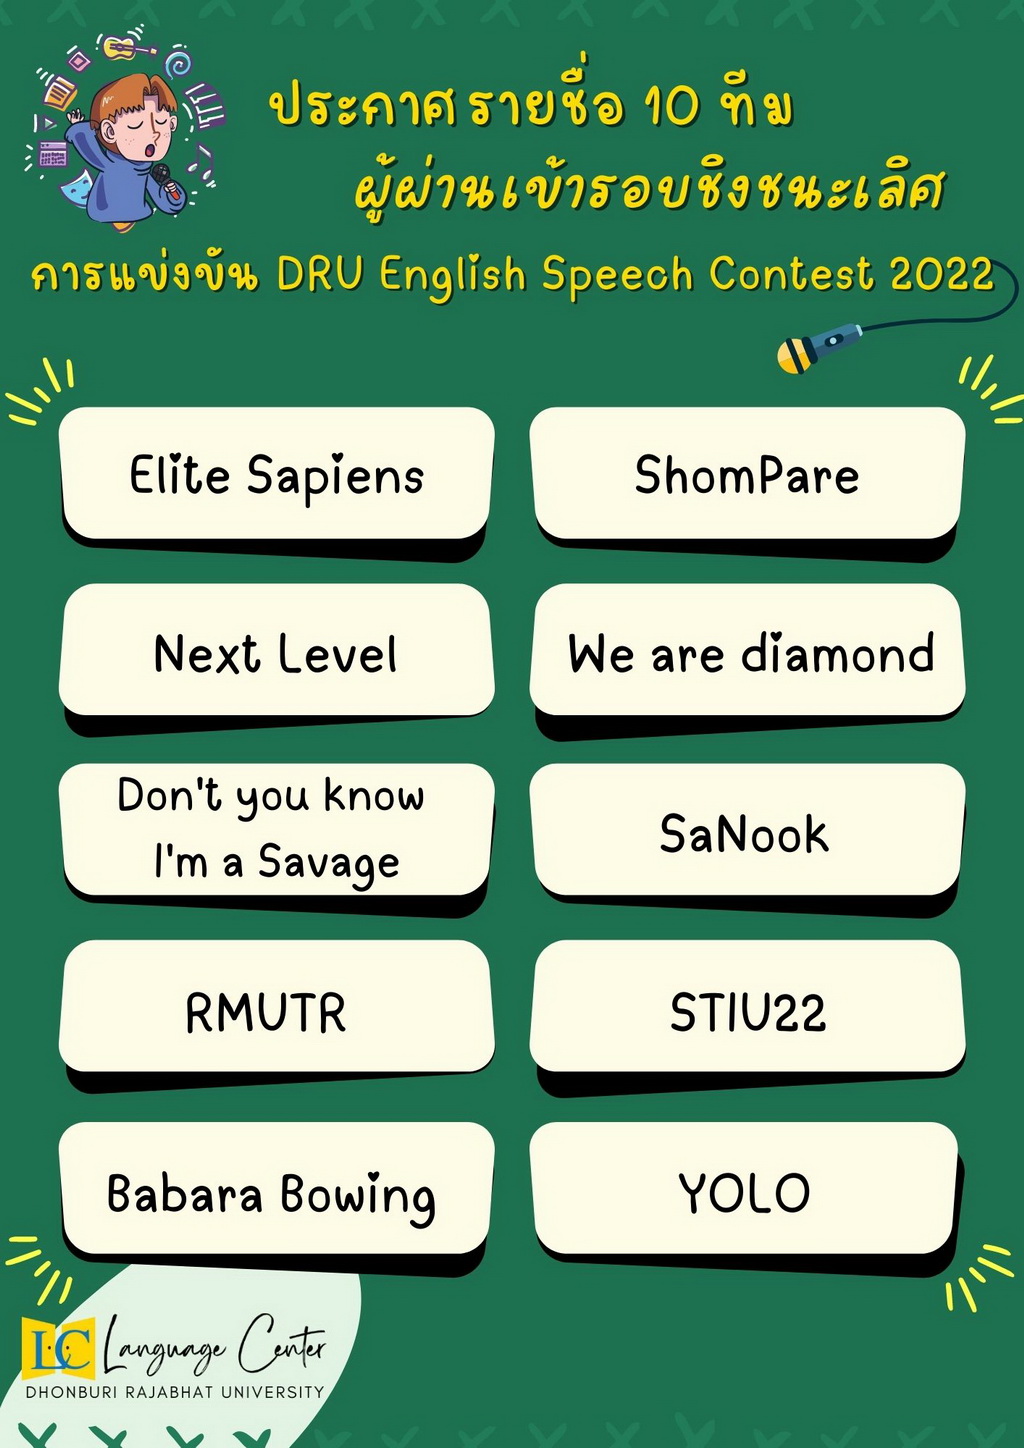 ประกาศทีมผู้เข้ารอบชิงชนะเลิศ การแข่งขัน DRU English Speech Contest 2022